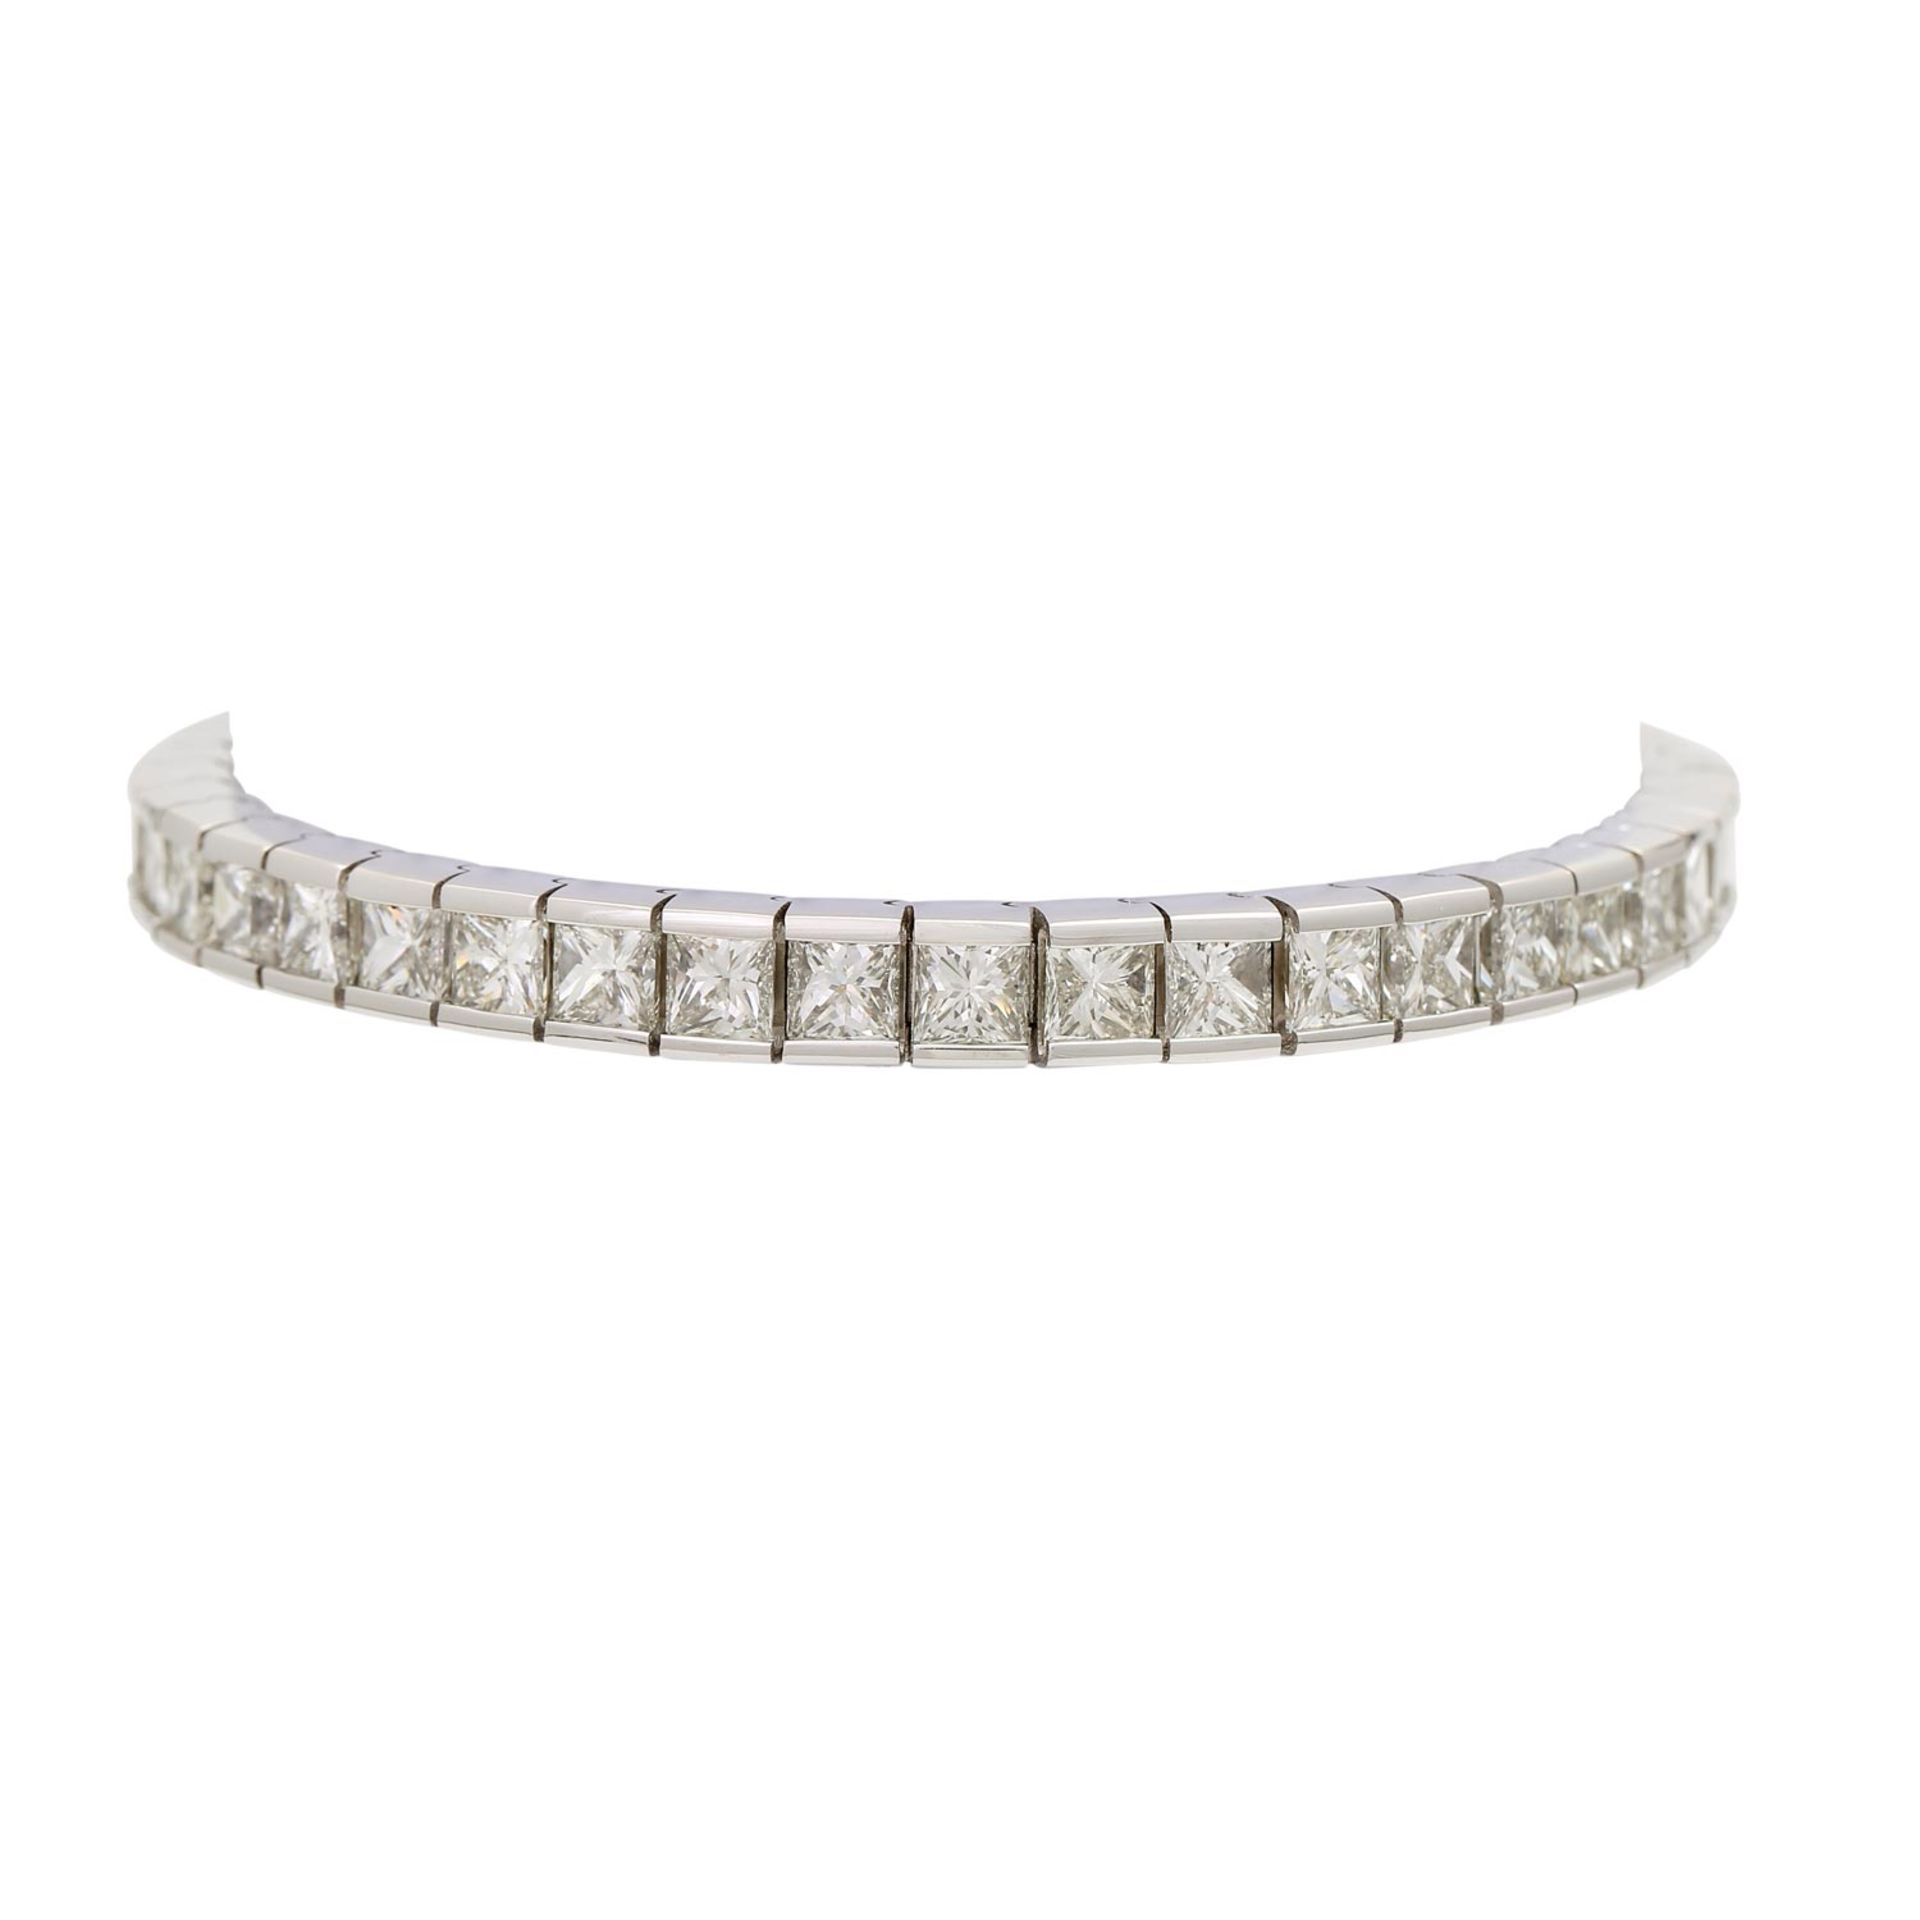 Armband mit 42 Diamanten im Prinzess-Schliff ca. 20 ct,GW-GET (L-M) / VVS-SI1 in WG 18K, L: ca. 18